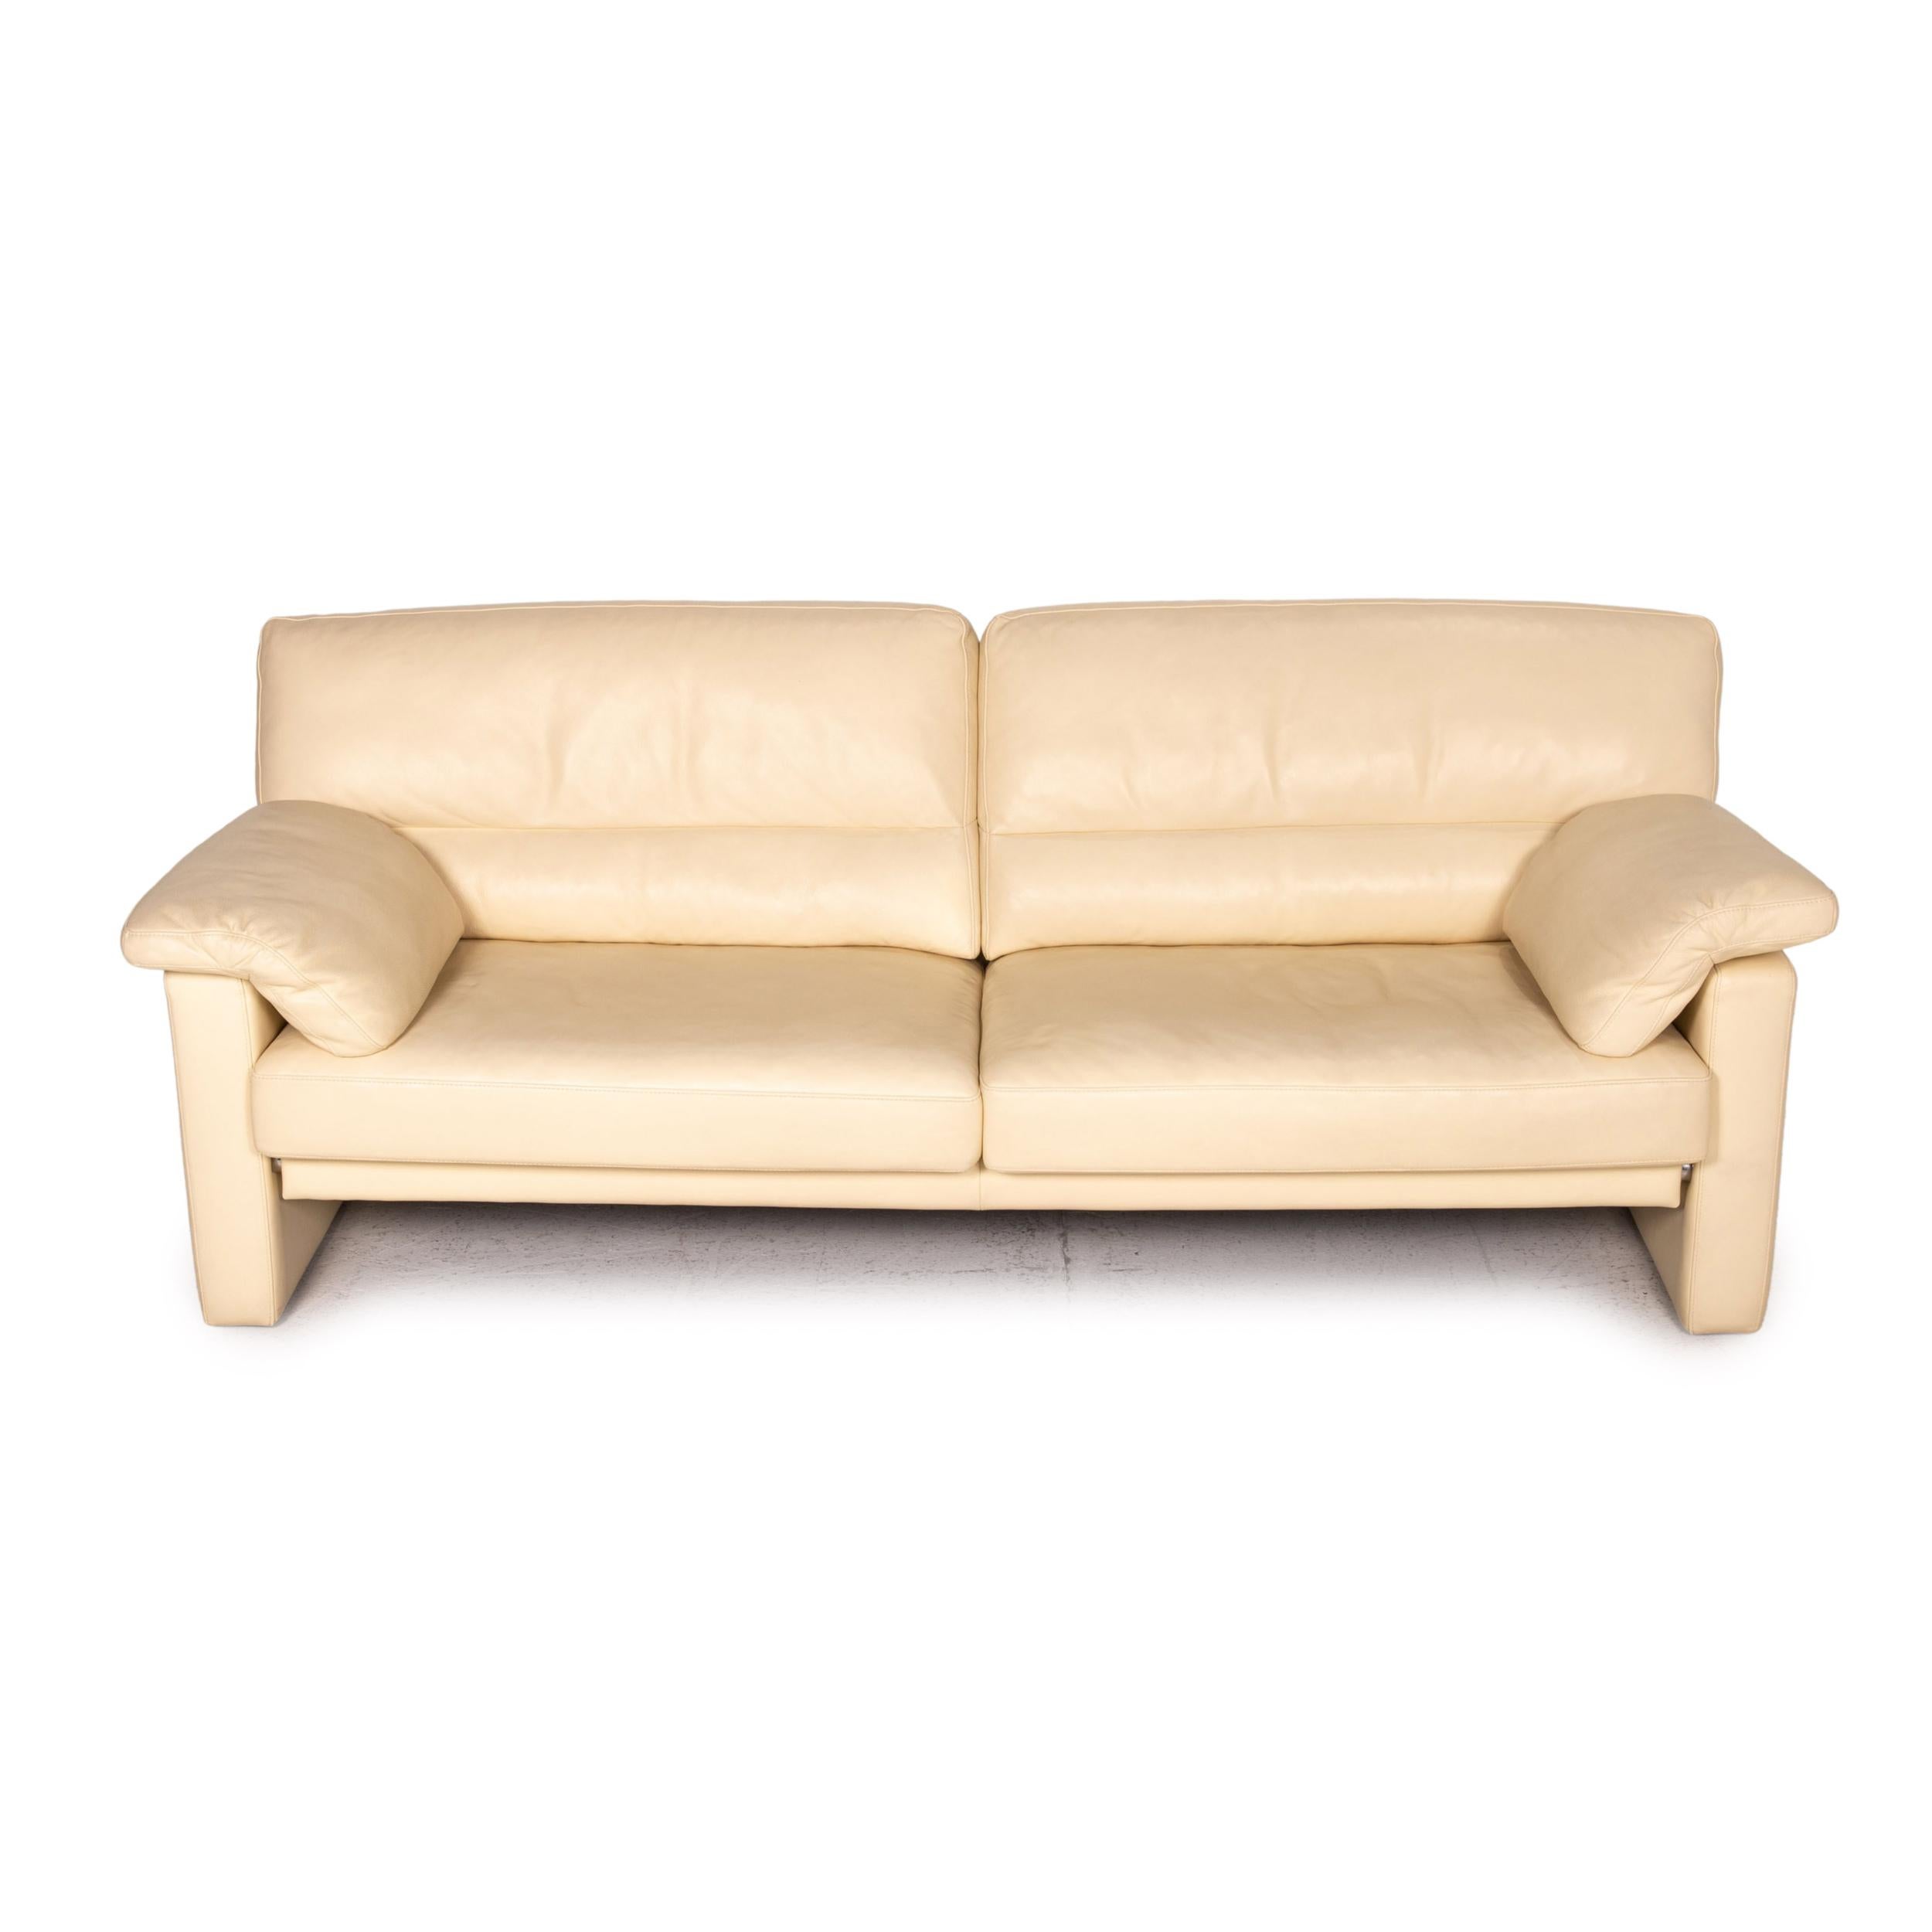 Bielefelder Werkstätten Leather Sofa Cream Three-Seater Couch For Sale 1